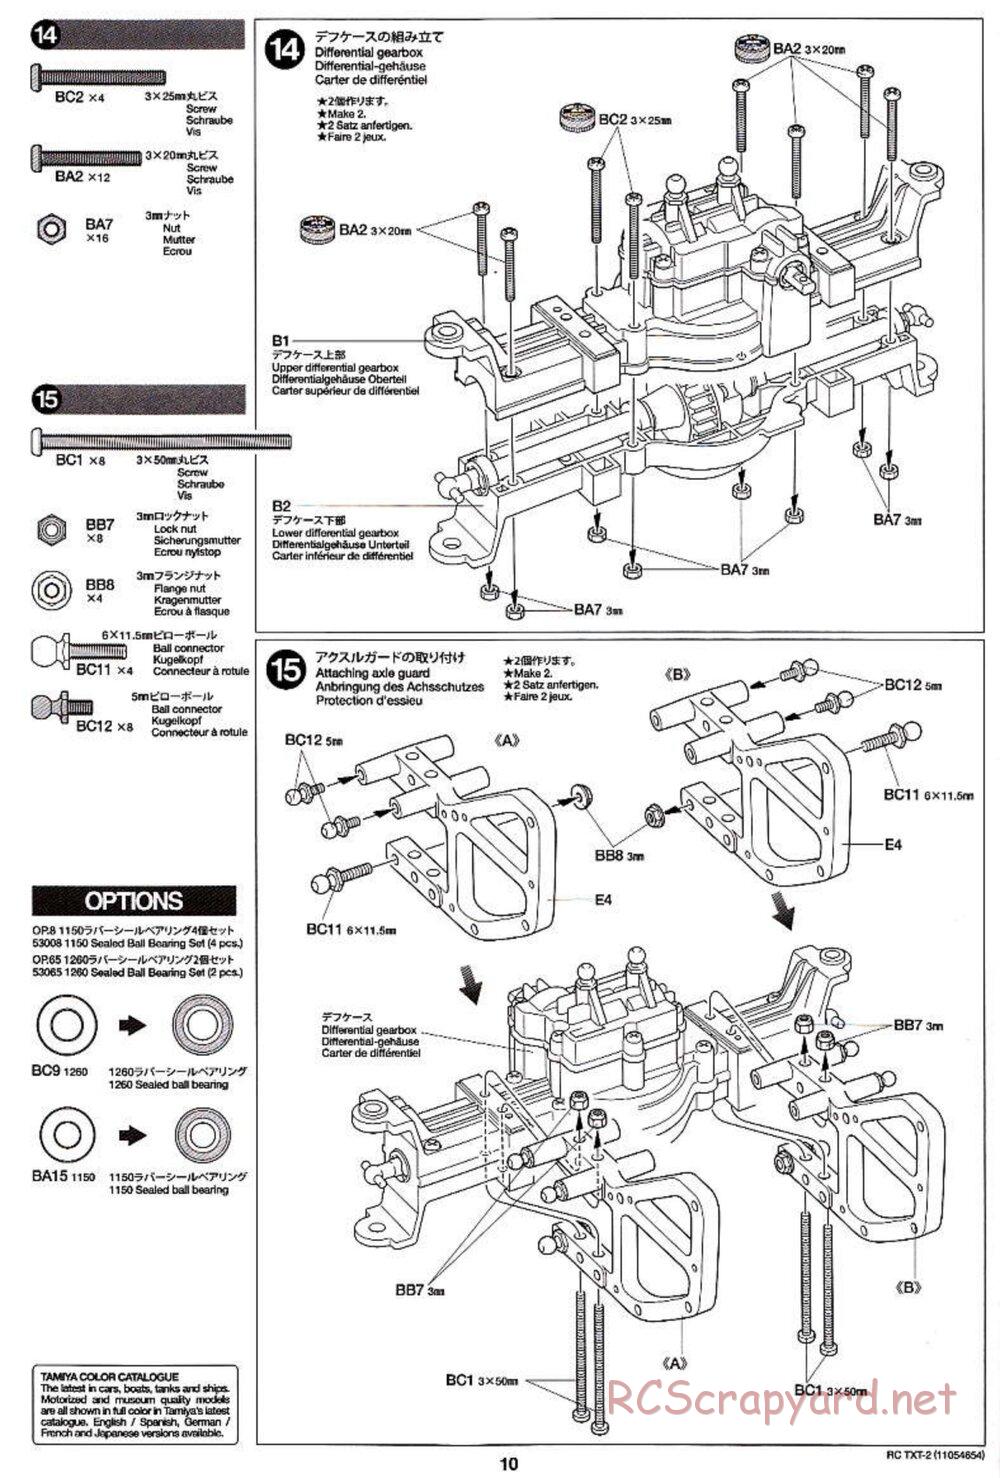 Tamiya - TXT-2 Chassis - Manual - Page 10